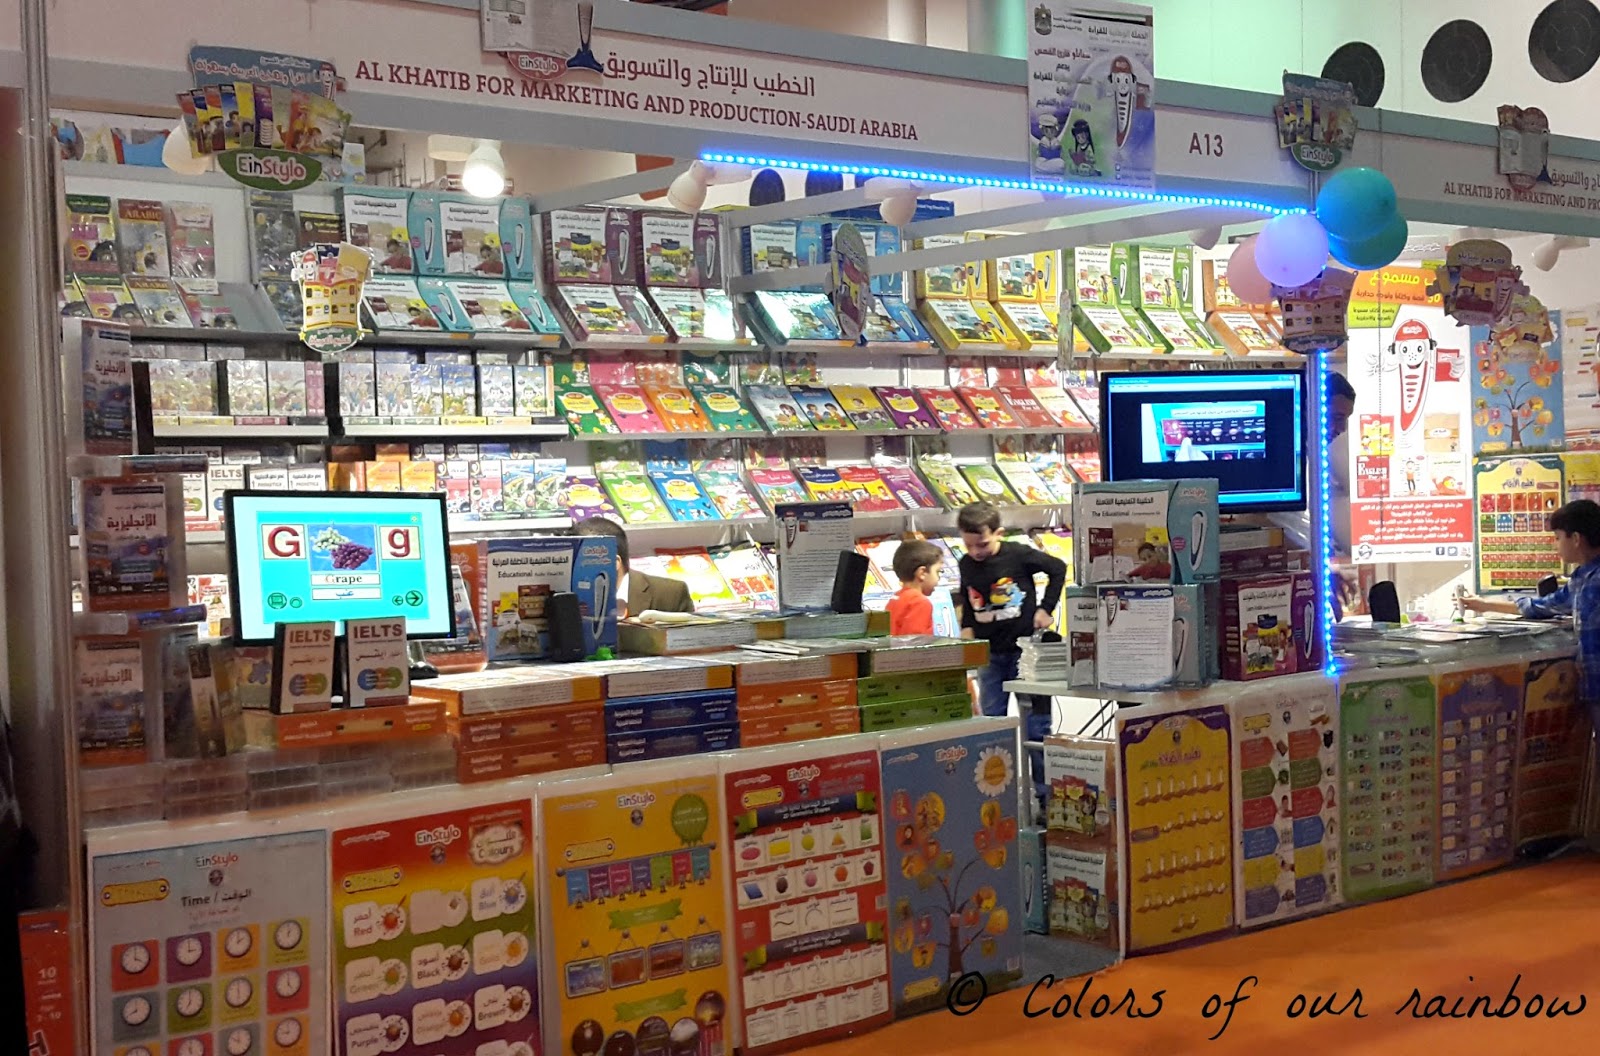 Sharjah book fair 2014